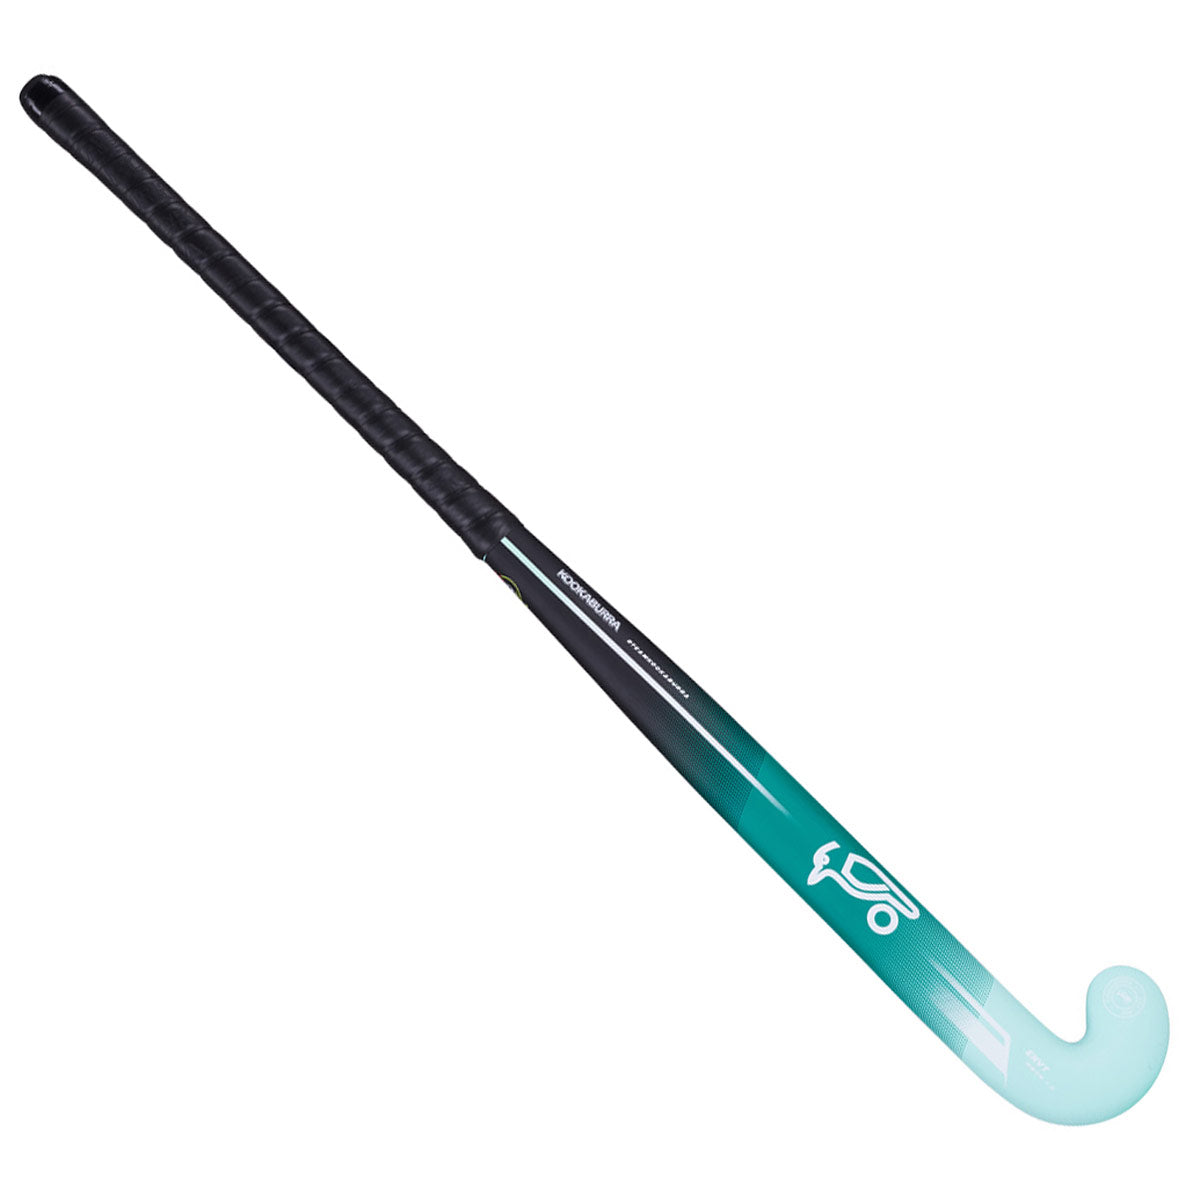 Kookaburra Envy M-Bow 1.0 Hockey Stick